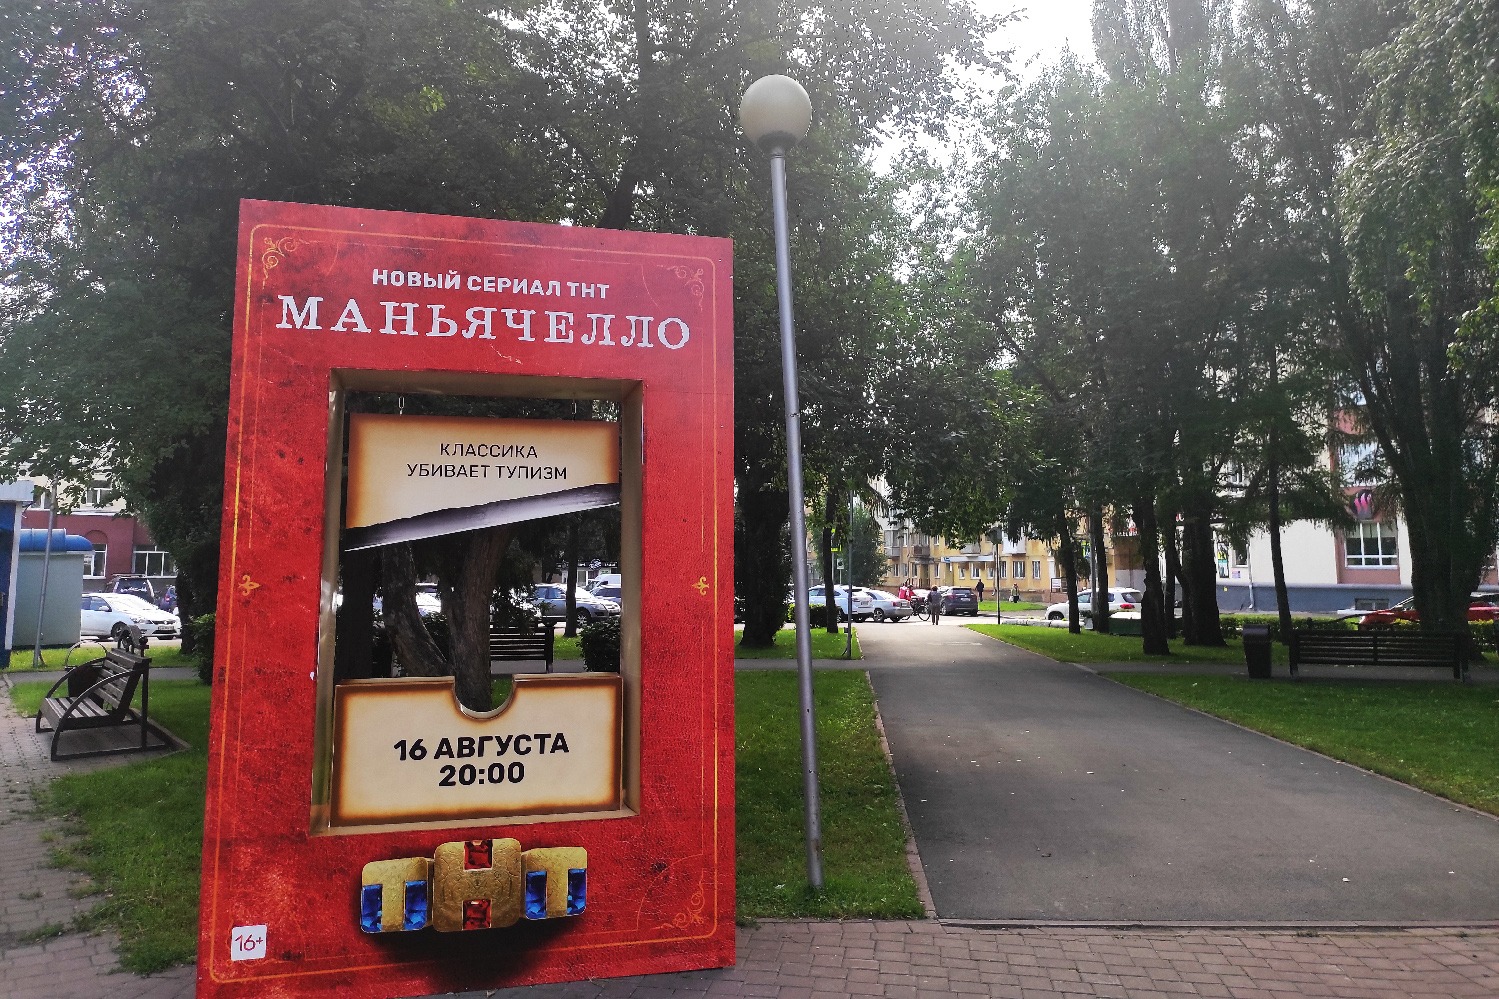 В Кемерове установили арт-объект, призывающий читать русскую классику